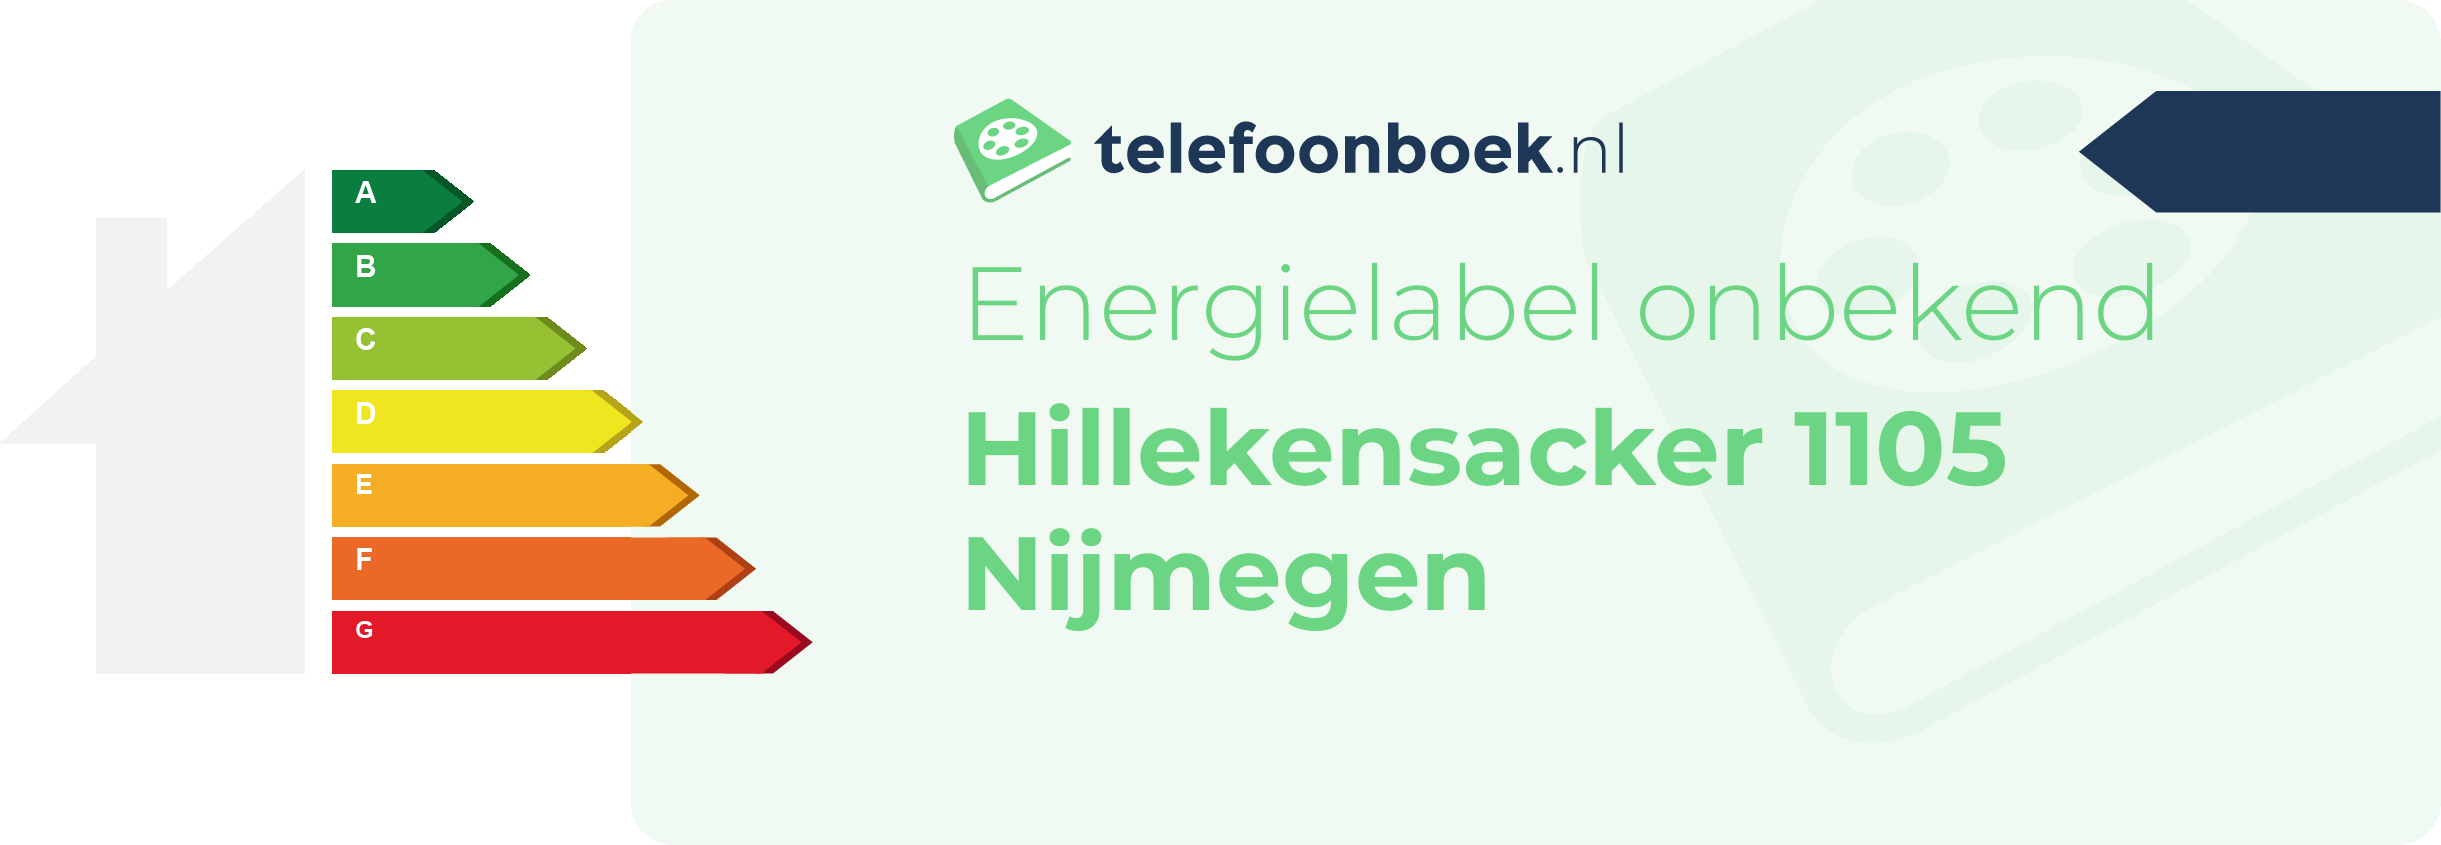 Energielabel Hillekensacker 1105 Nijmegen